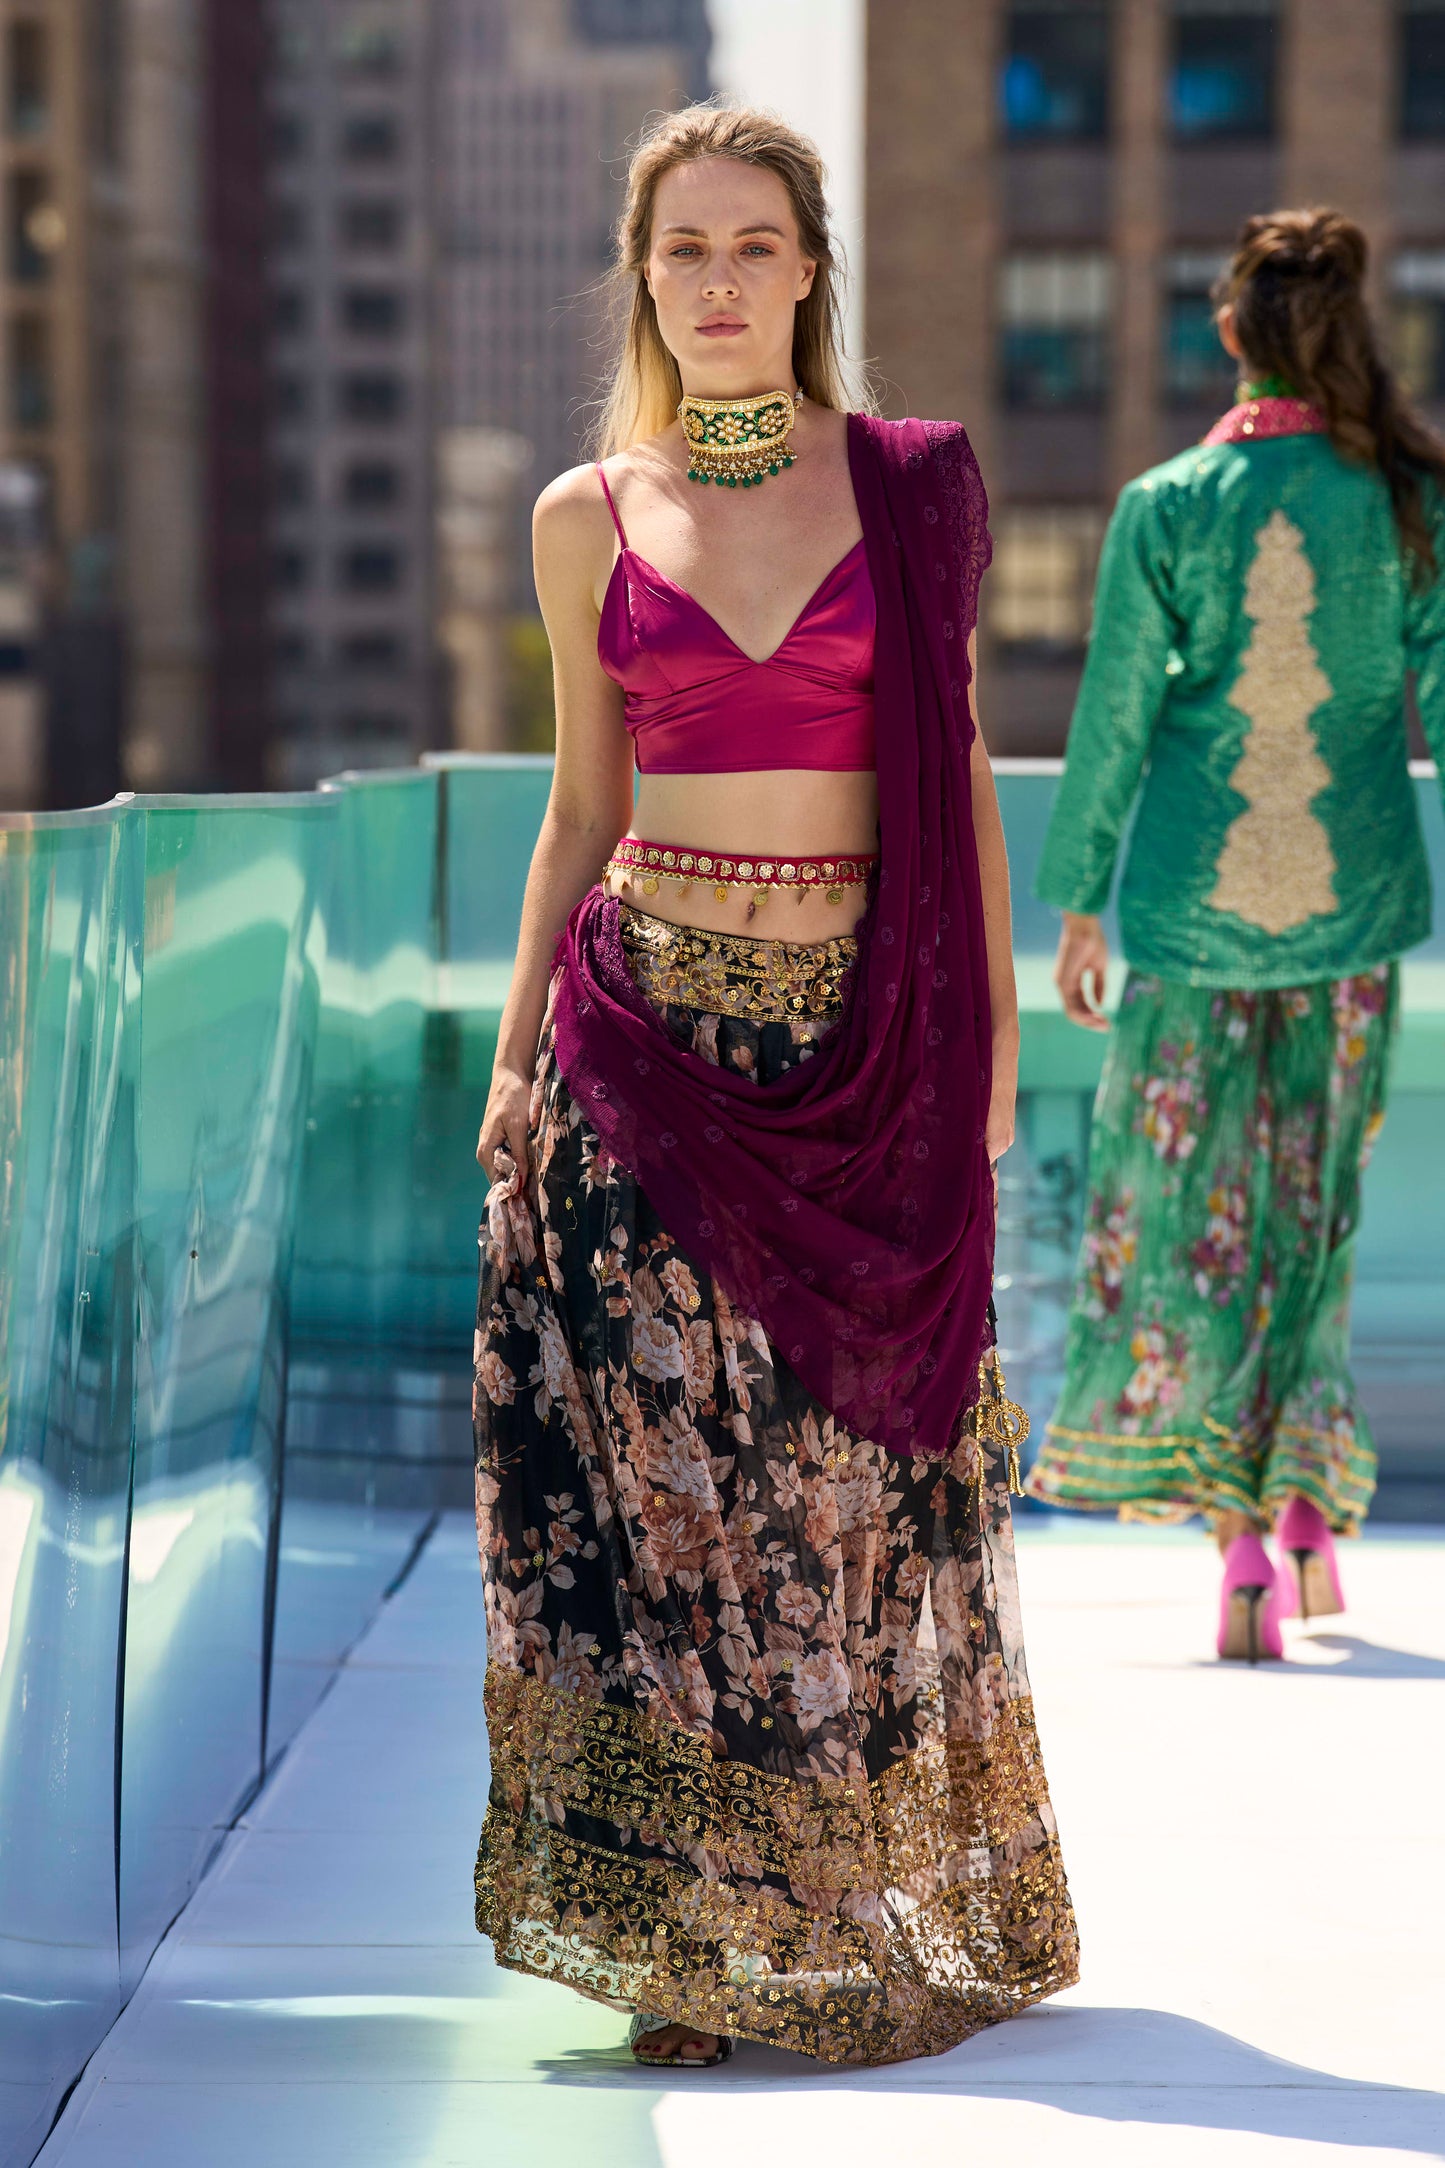 The Newyork Sari